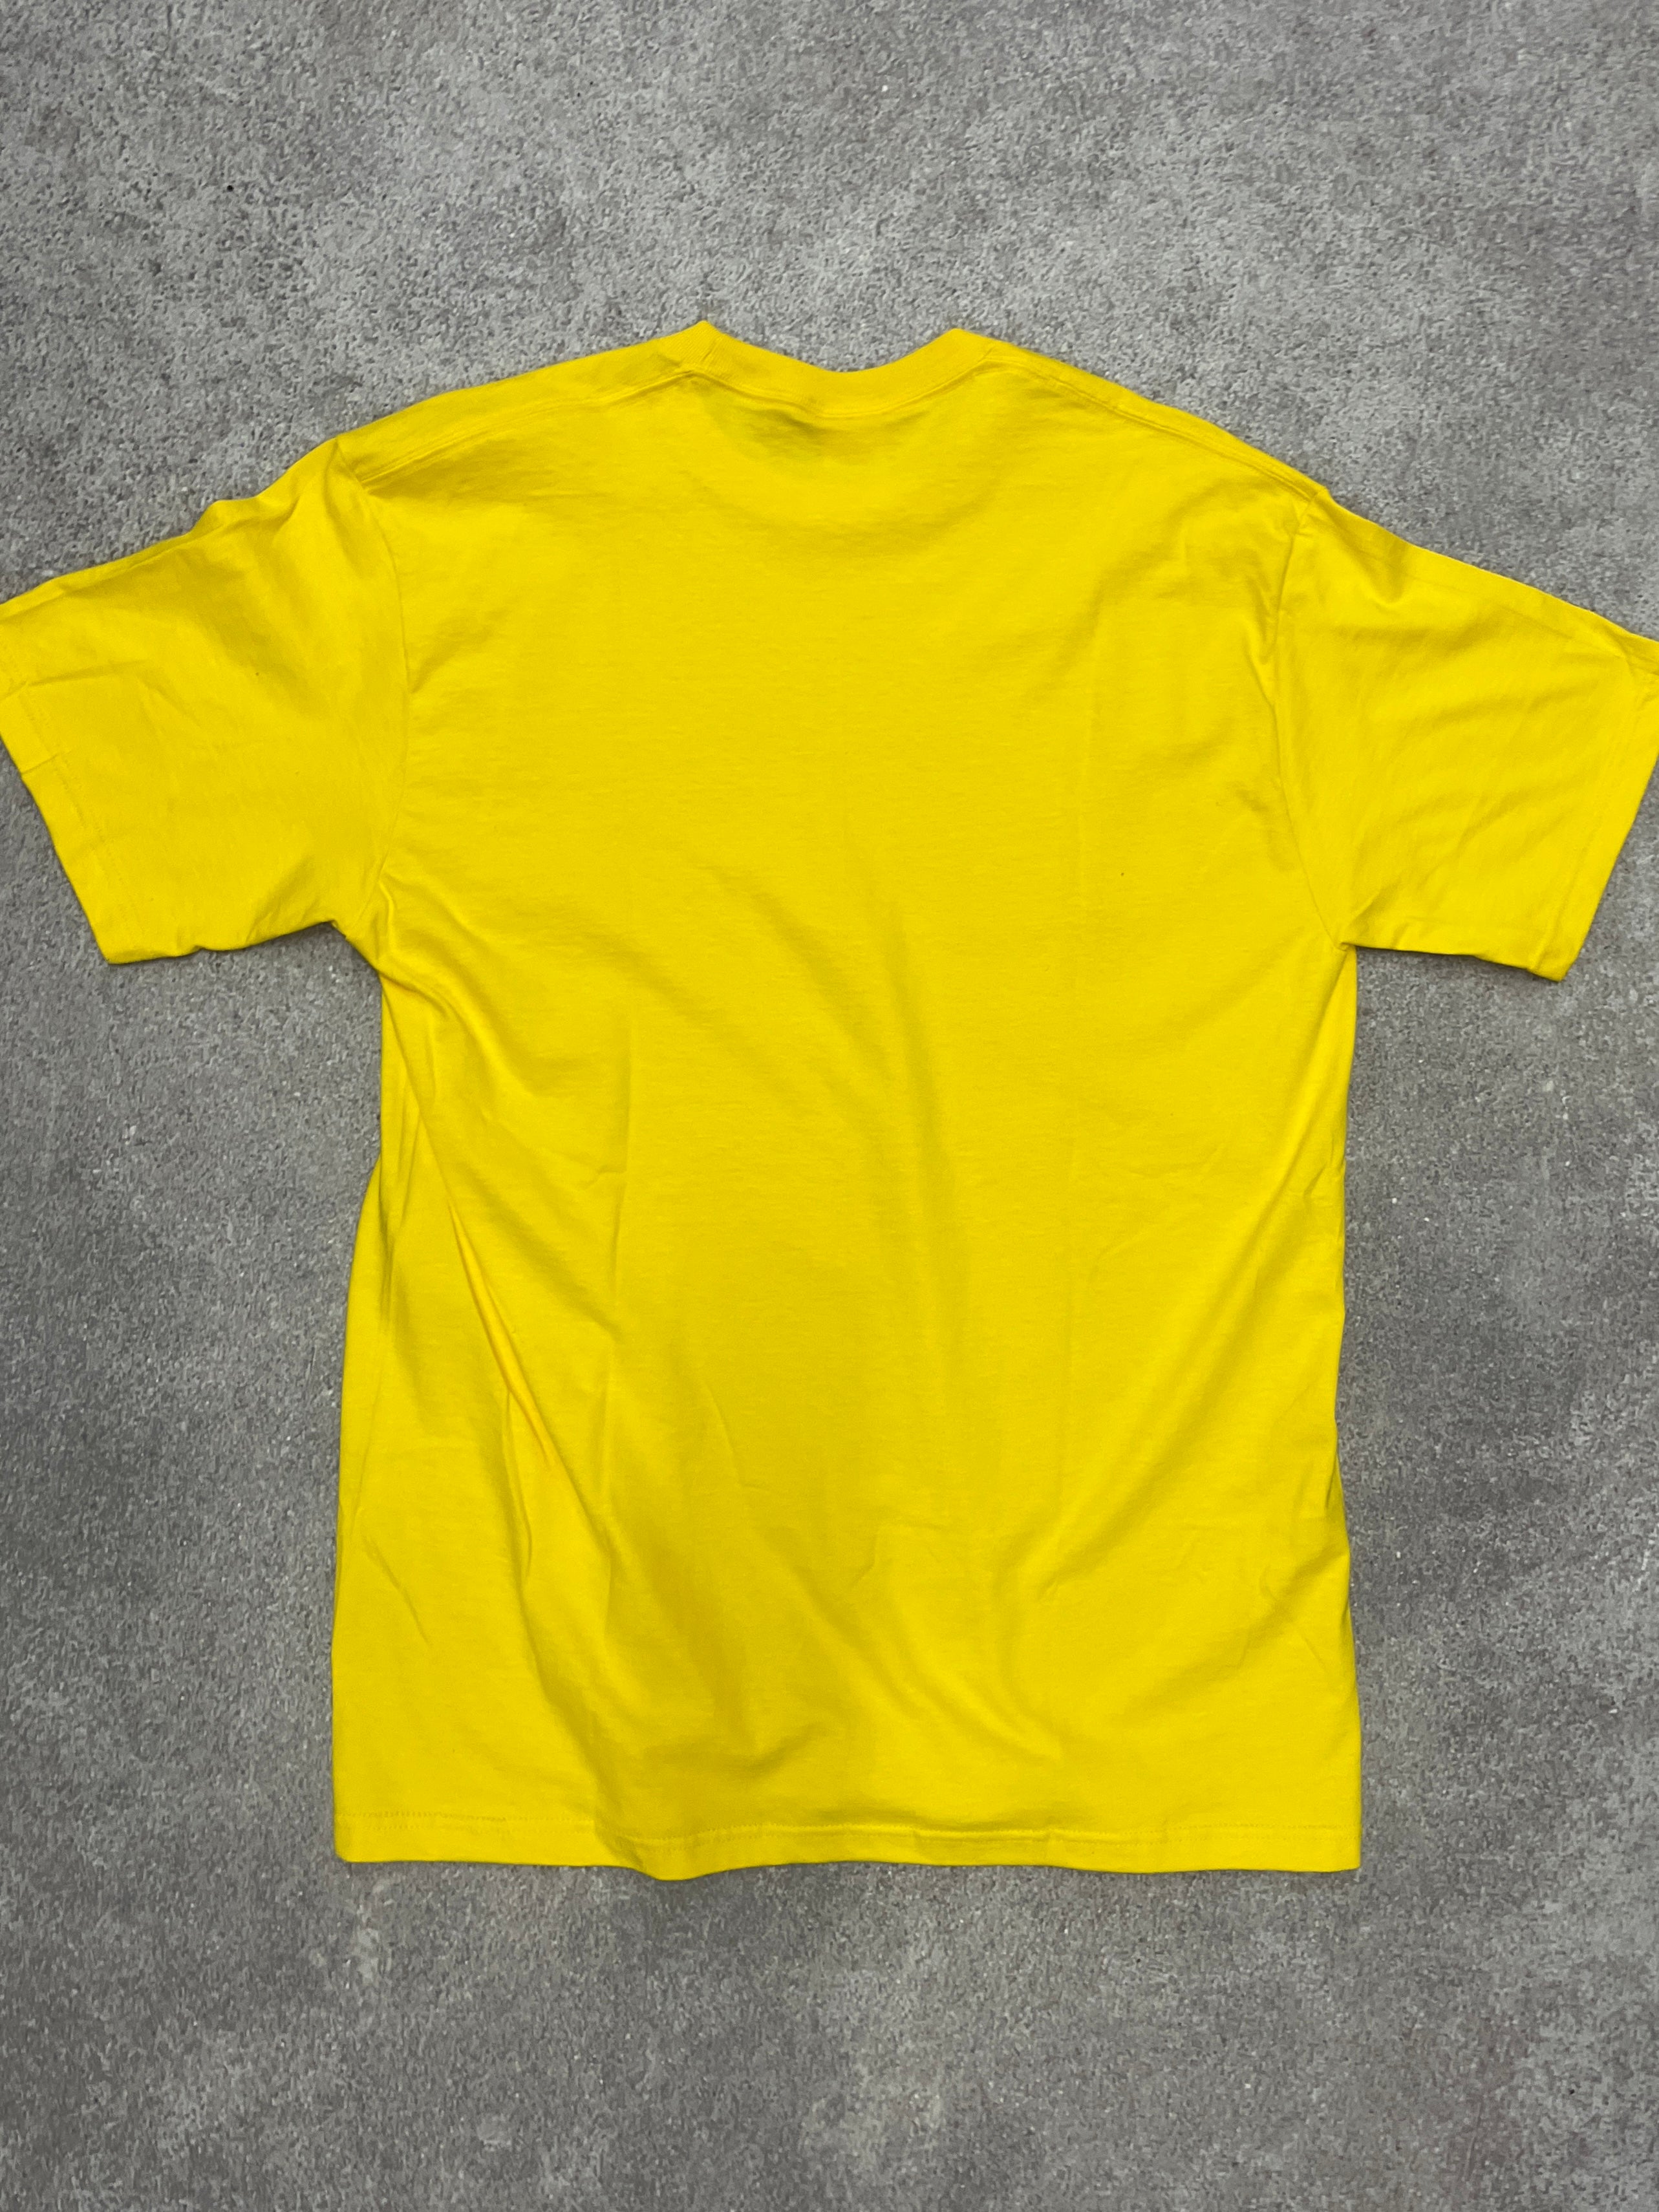 Supreme Motion TShirt Yellow // Medium - RHAGHOUSE VINTAGE